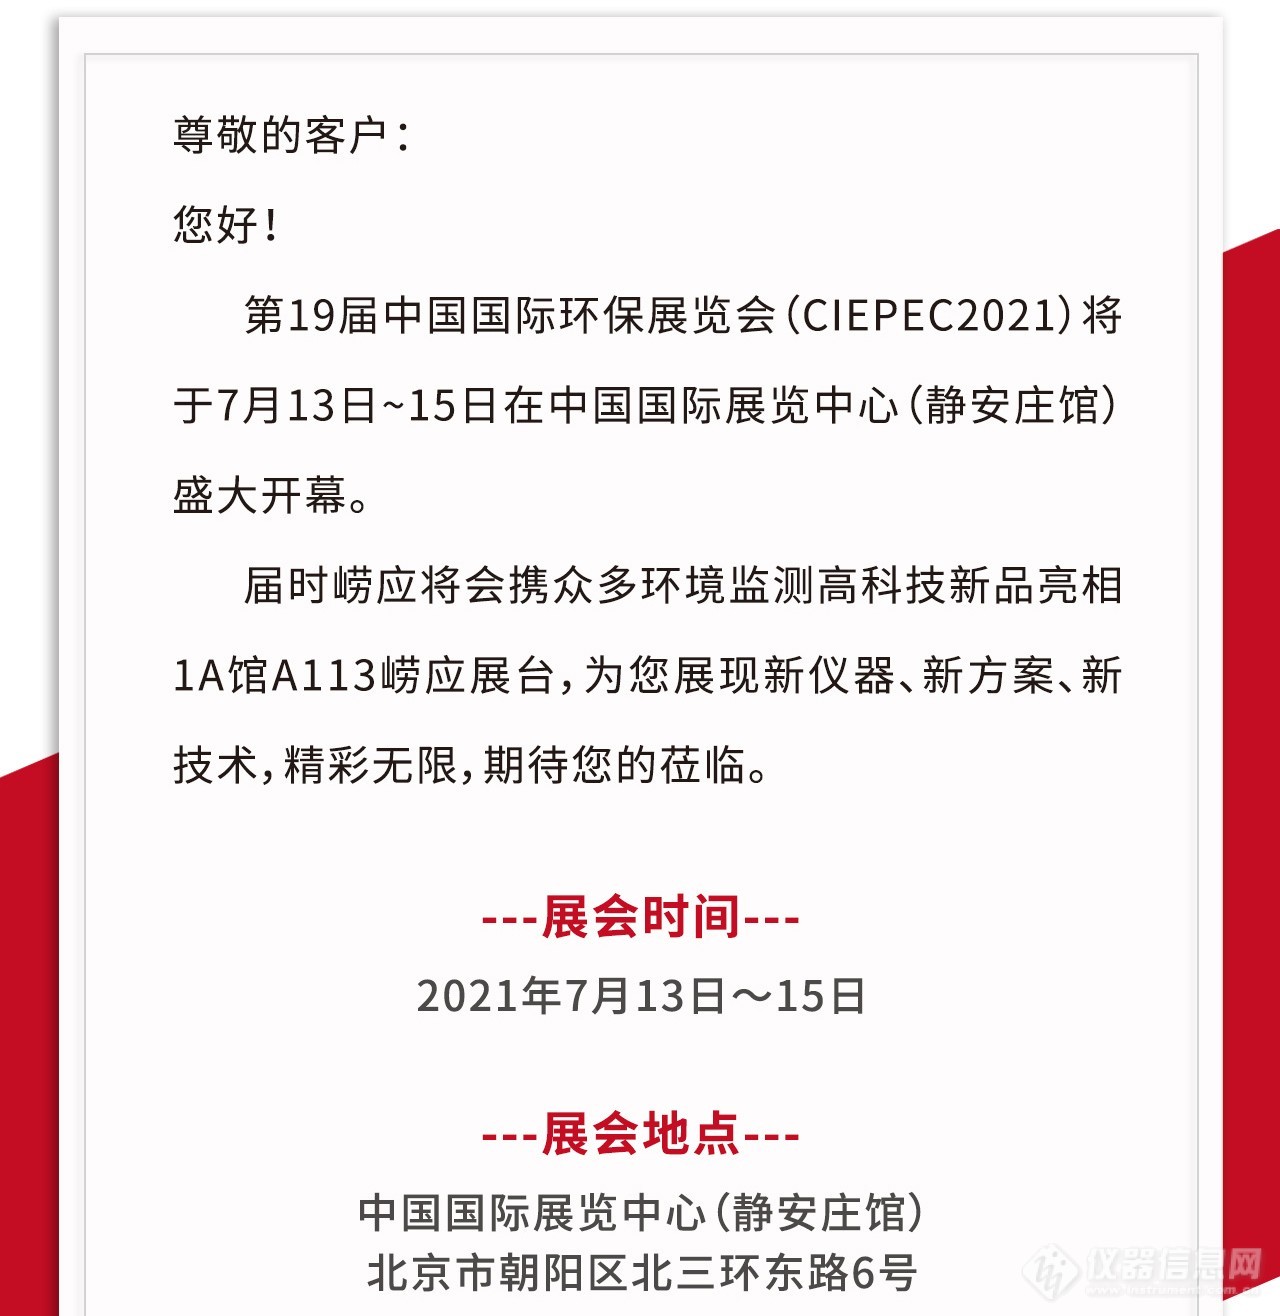 20210701-北京展会海报(1)_02.jpg